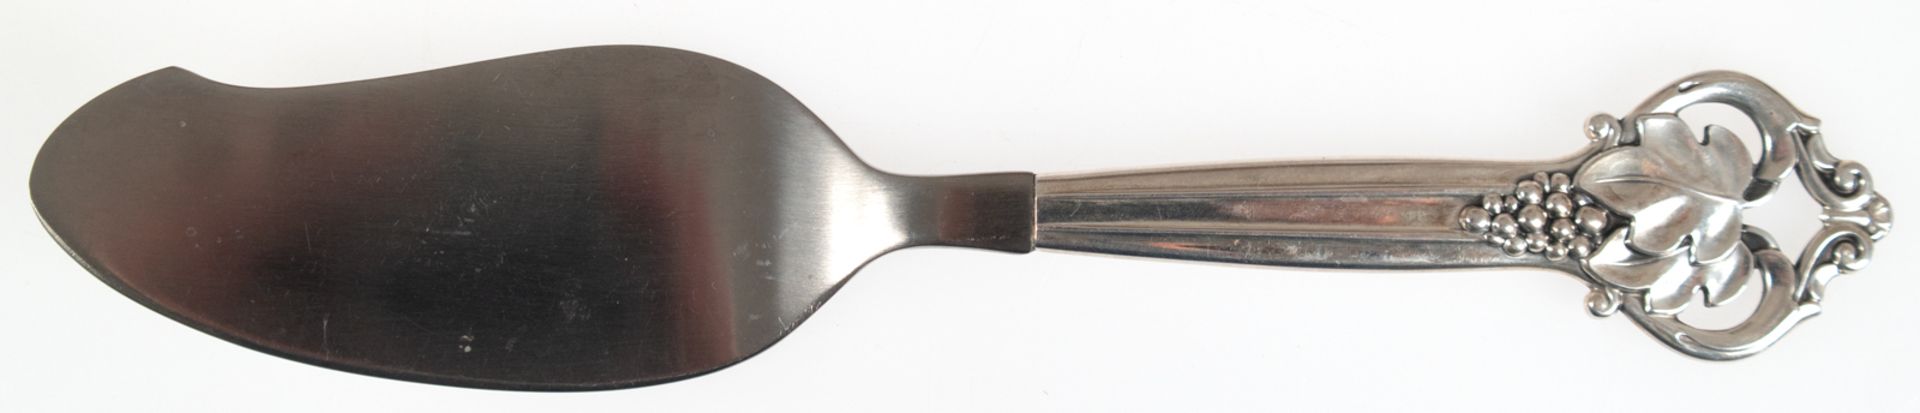 Tortenheber mit Silbergriff, Dänemark 1947, durchbrochenes Griffende mit Traubendekor, L. 24 cm